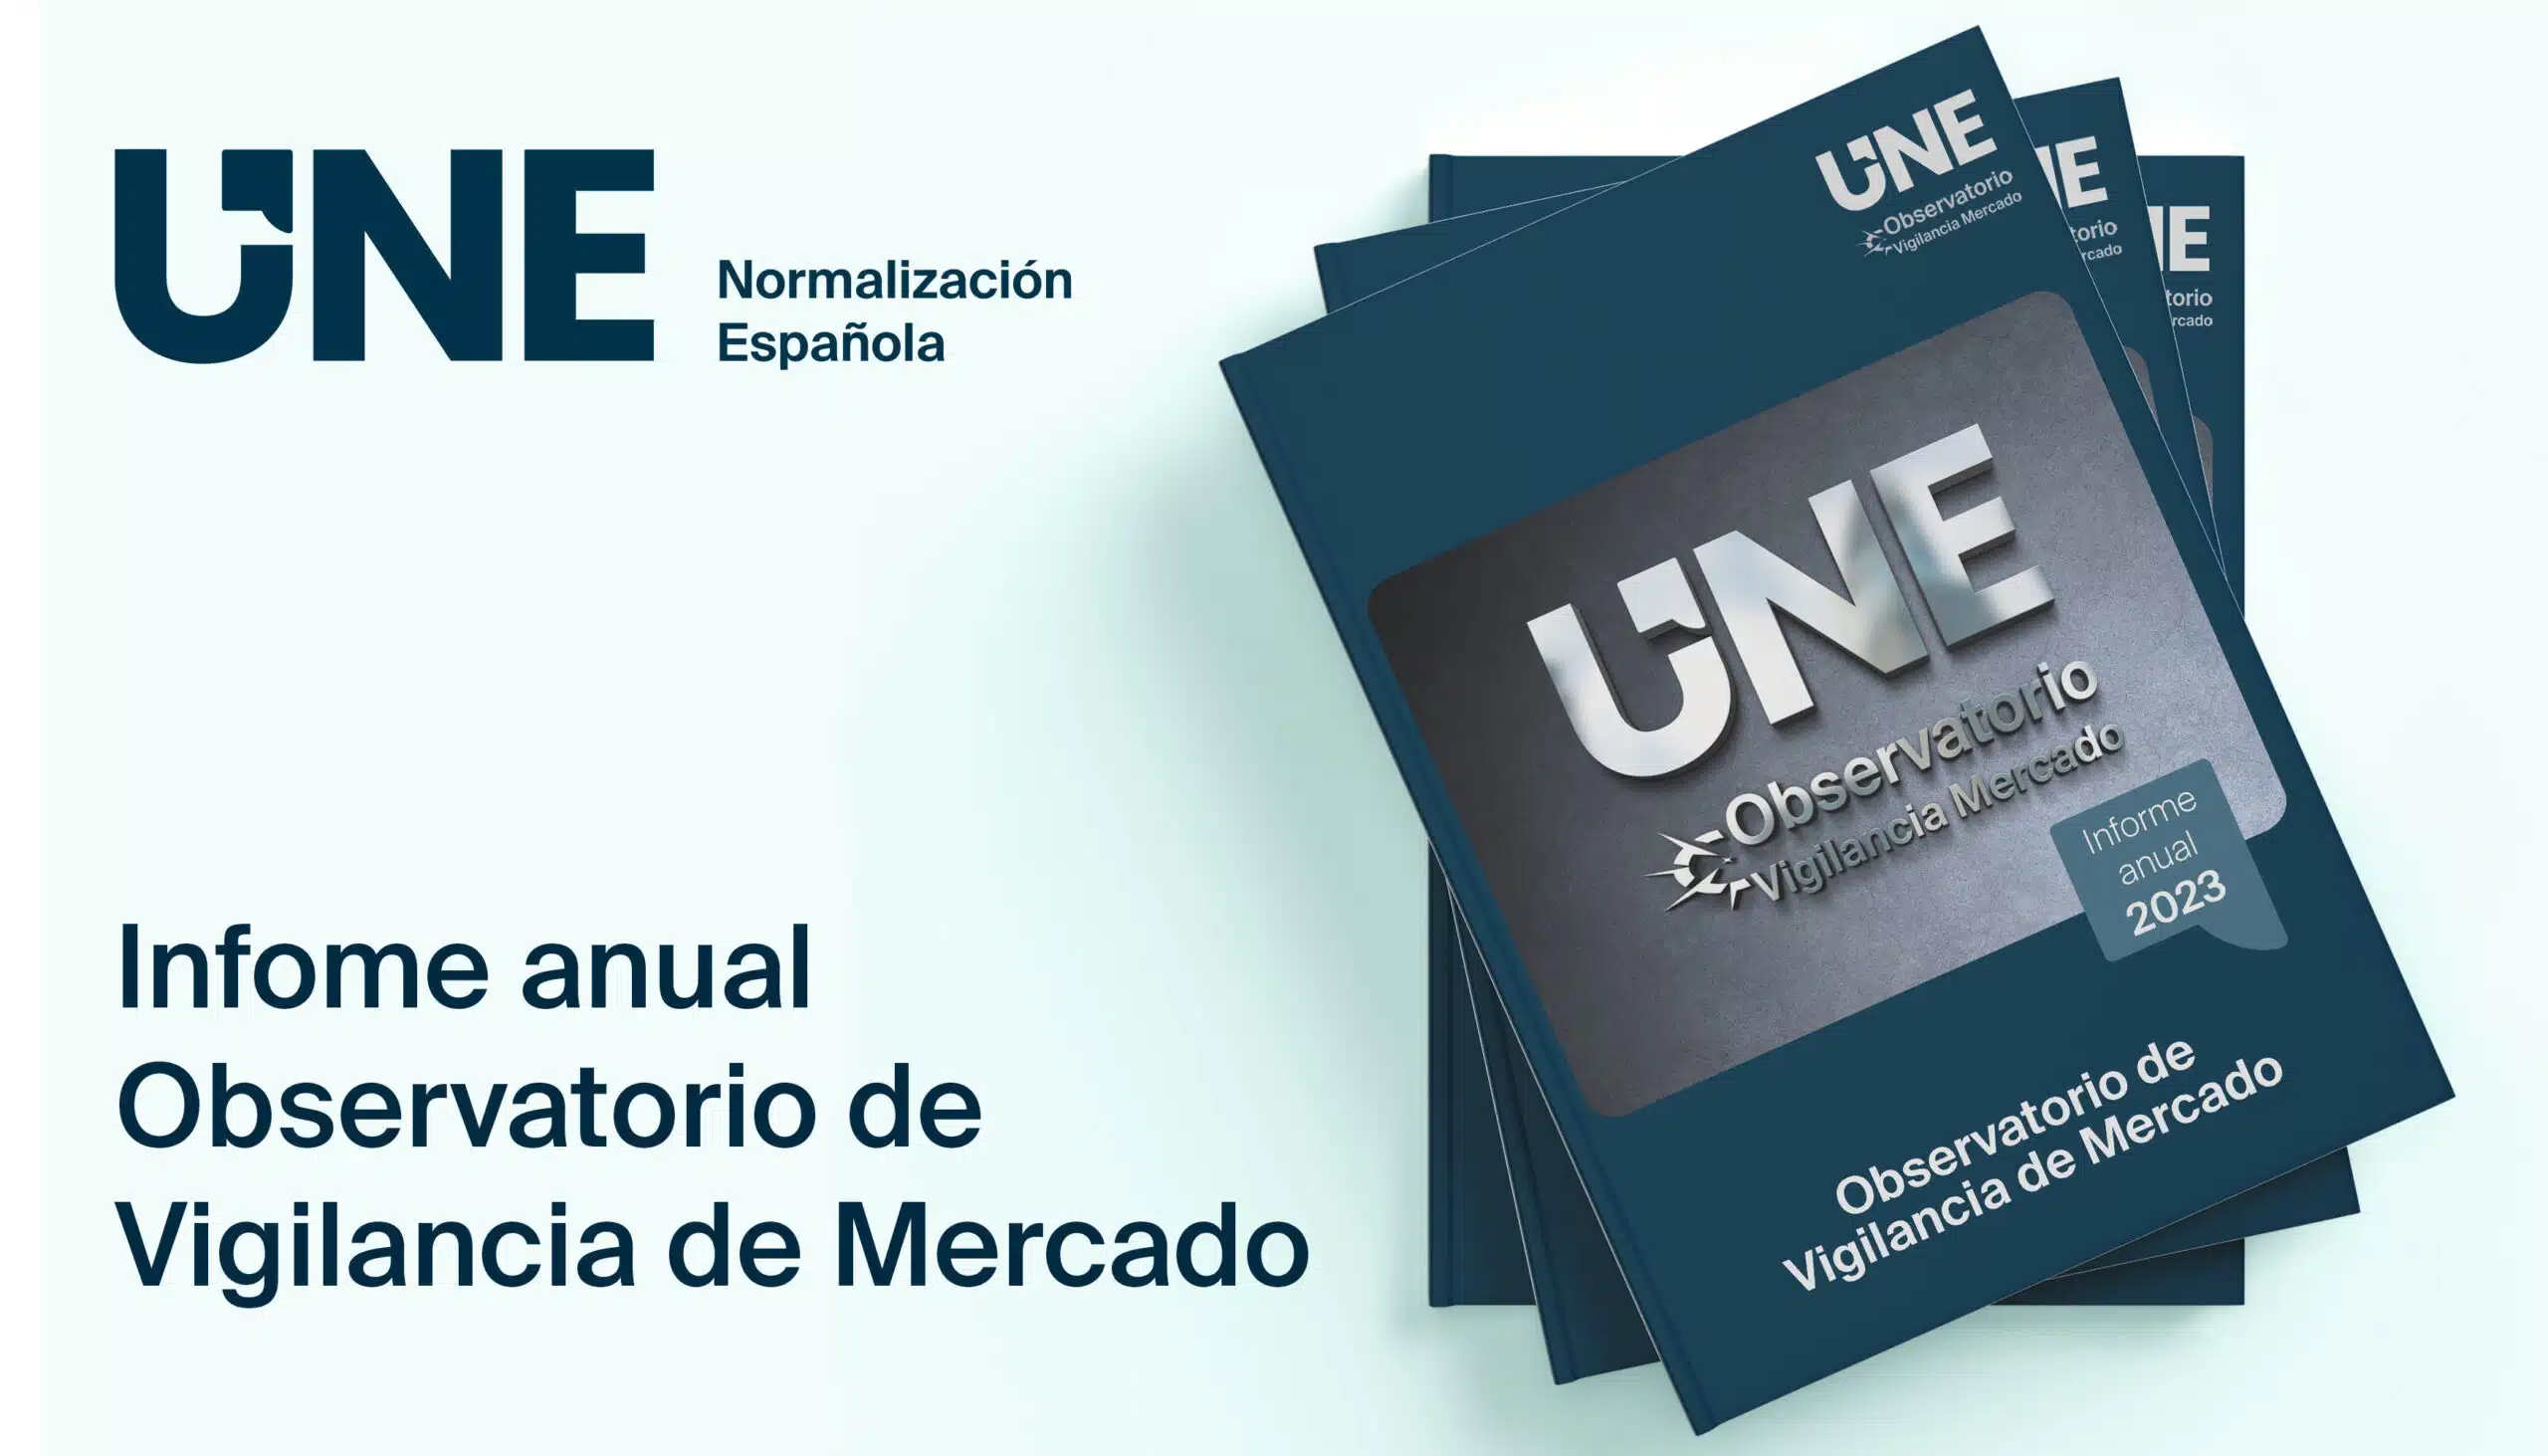 La Asociación Española de Normalización publica su tercer informe anual de vigilancia de mercado